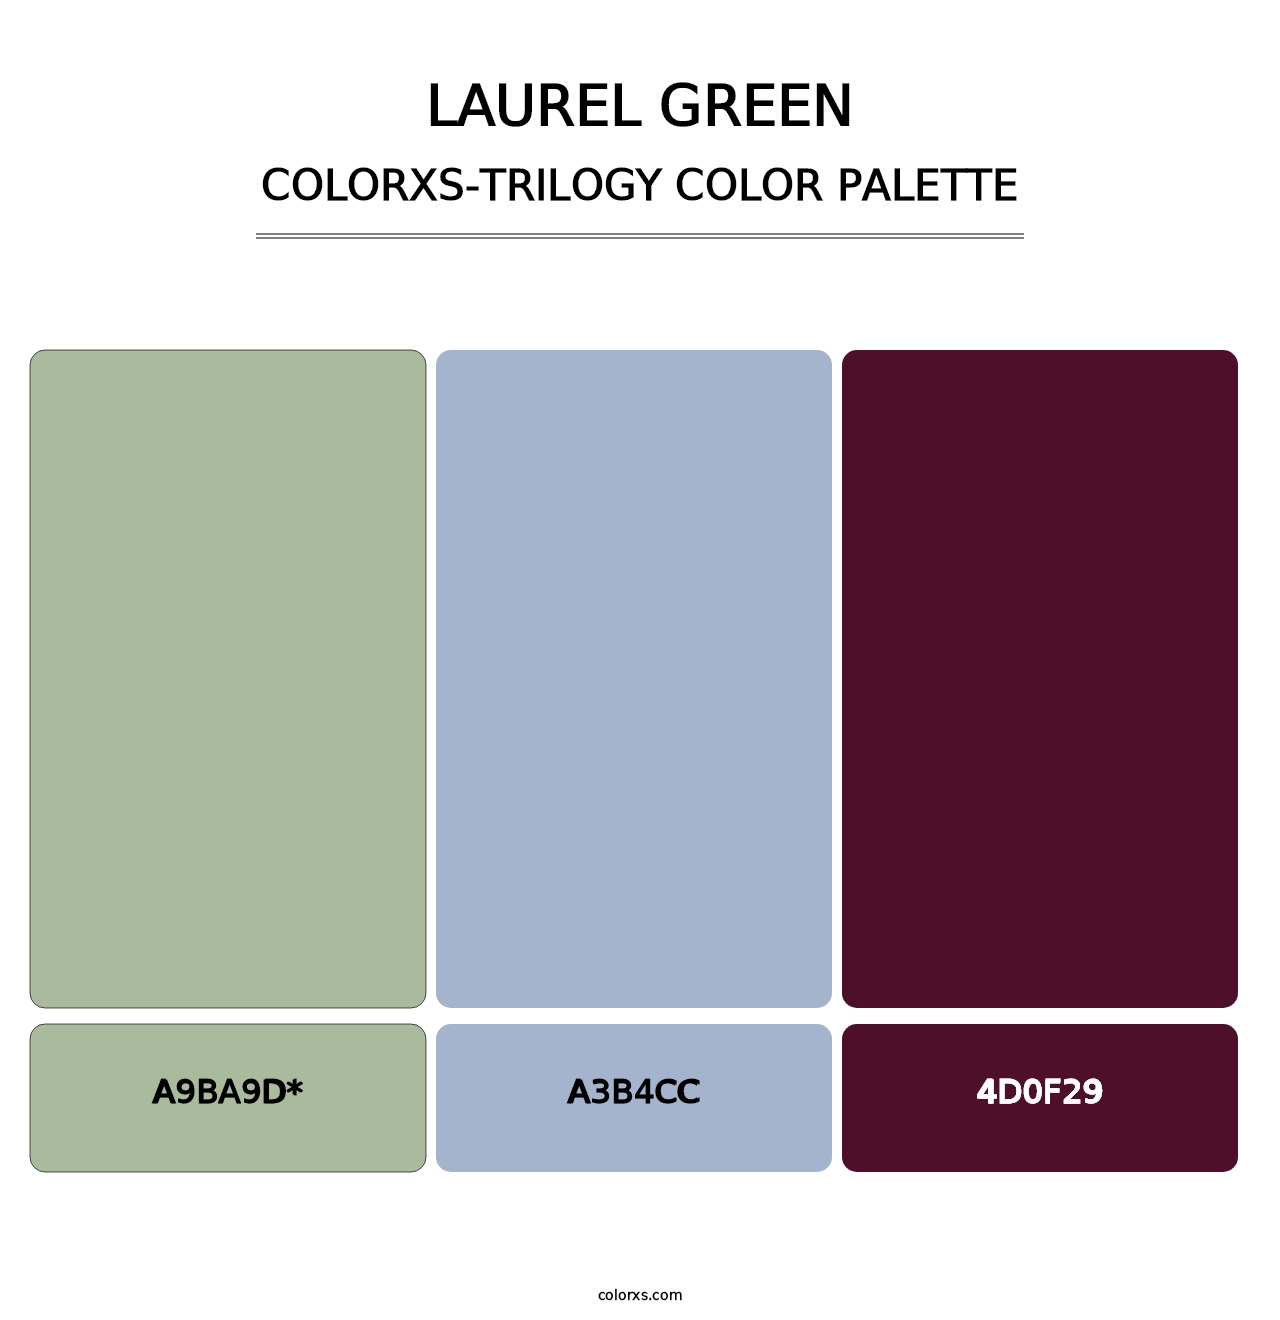 Laurel Green - Colorxs Trilogy Palette